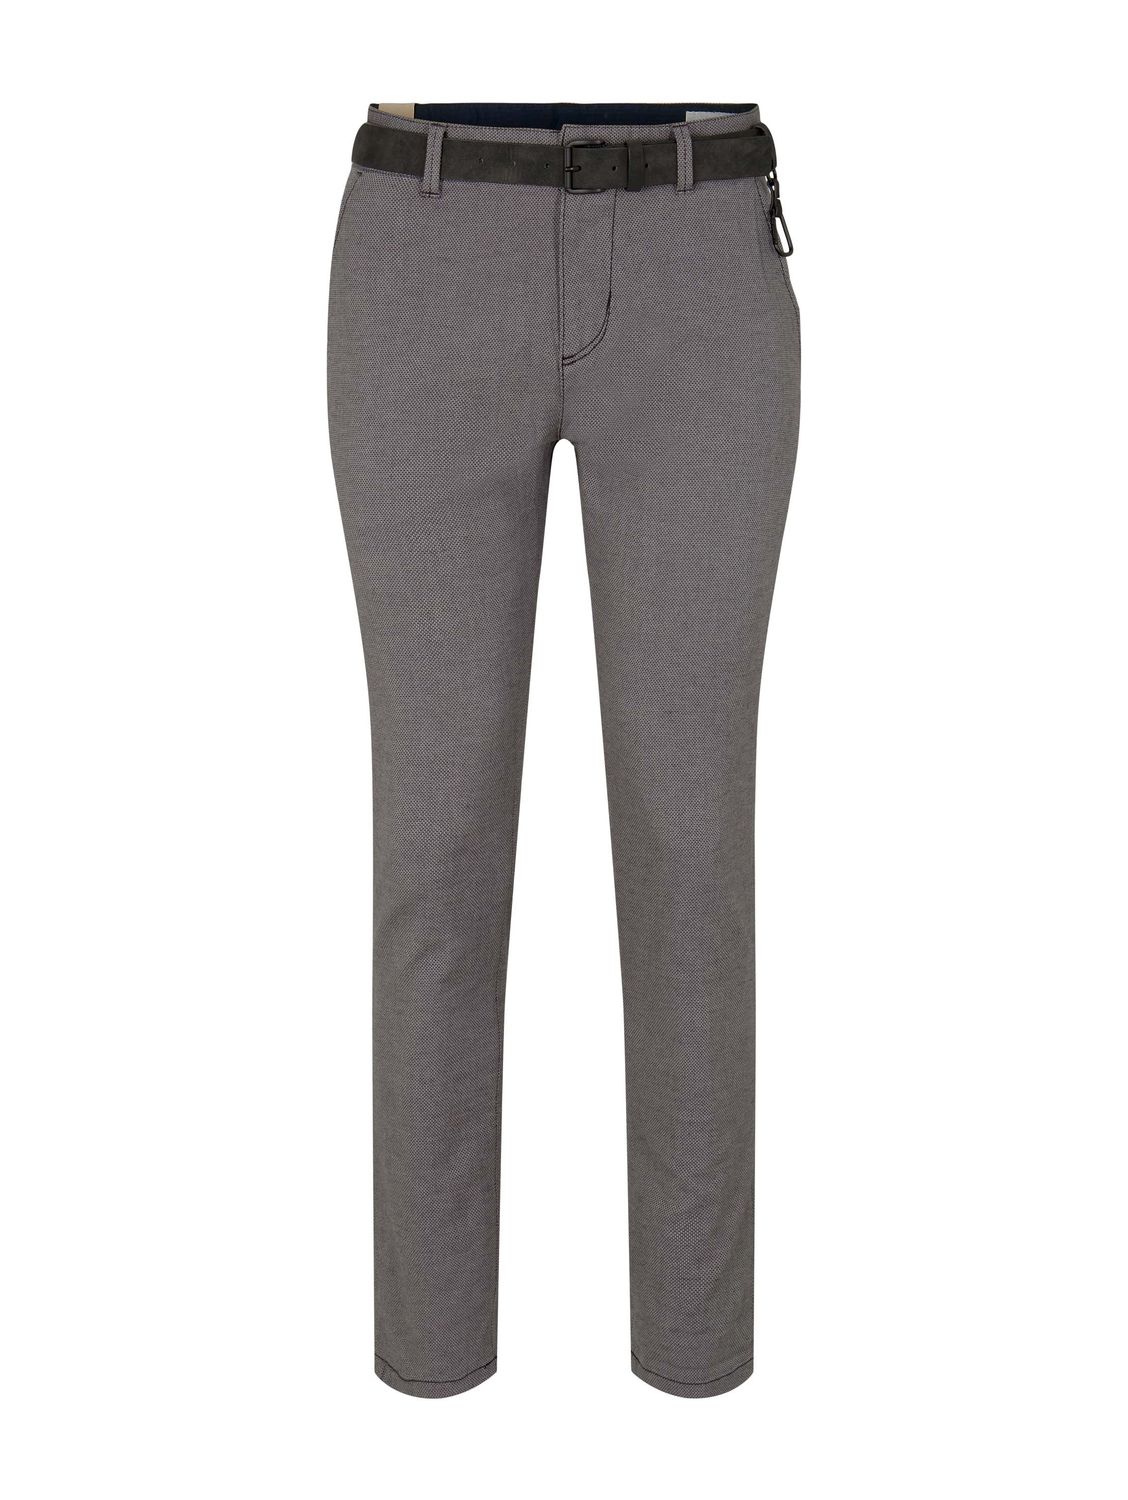 Тканевые брюки TOM TAILOR Denim Stoff/Chino Chino mit Gürtel regular/straight, серый толстовка tom tailor размер xs серый